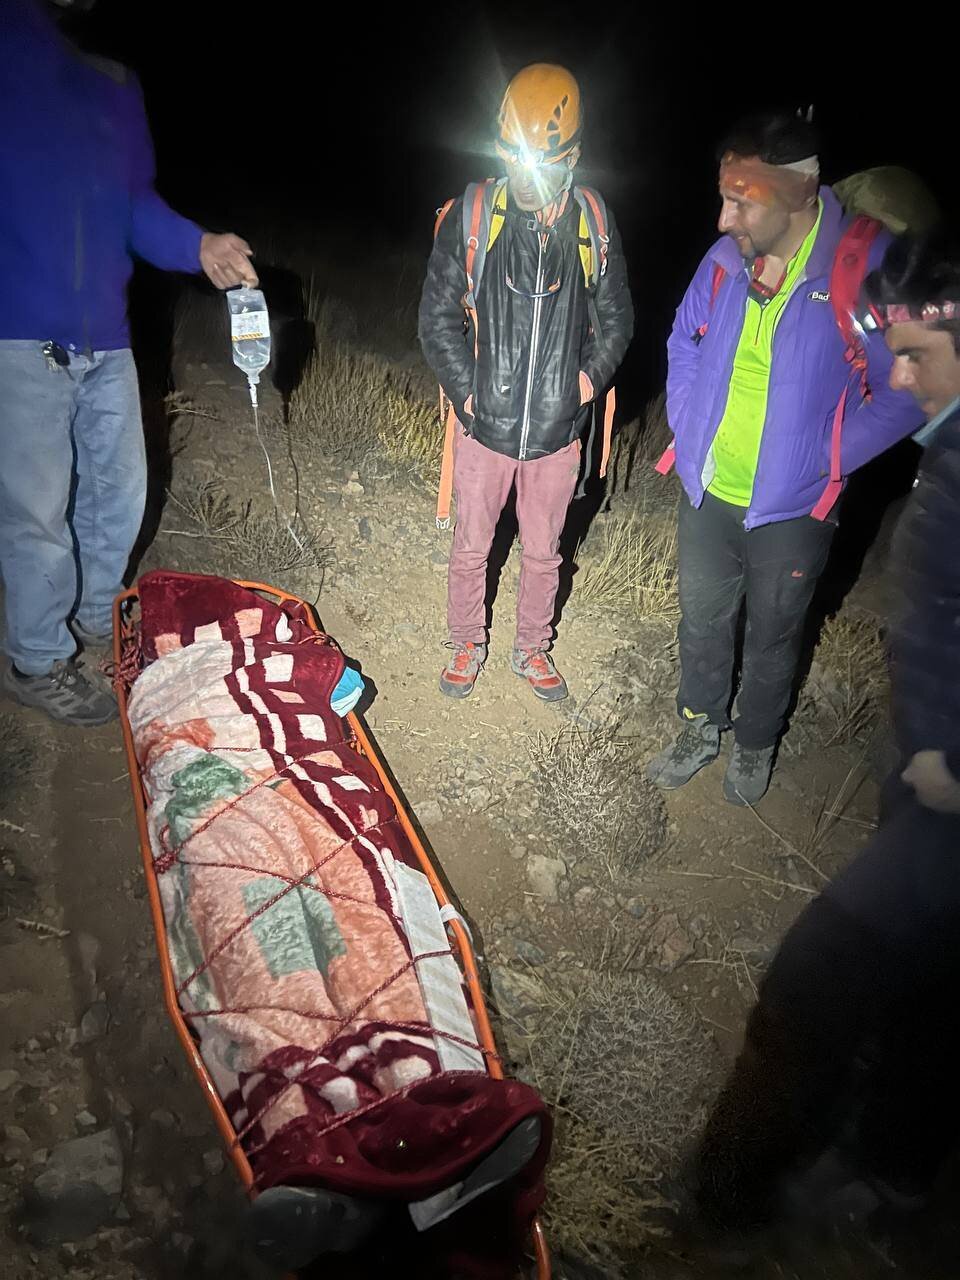 بانوی کوهنورد یزدی پس از فتح قله "میل فرنگی" دچار حادثه شد| عملیات نفسگیر گروه امداد و نجات مهریز در کوهستان!